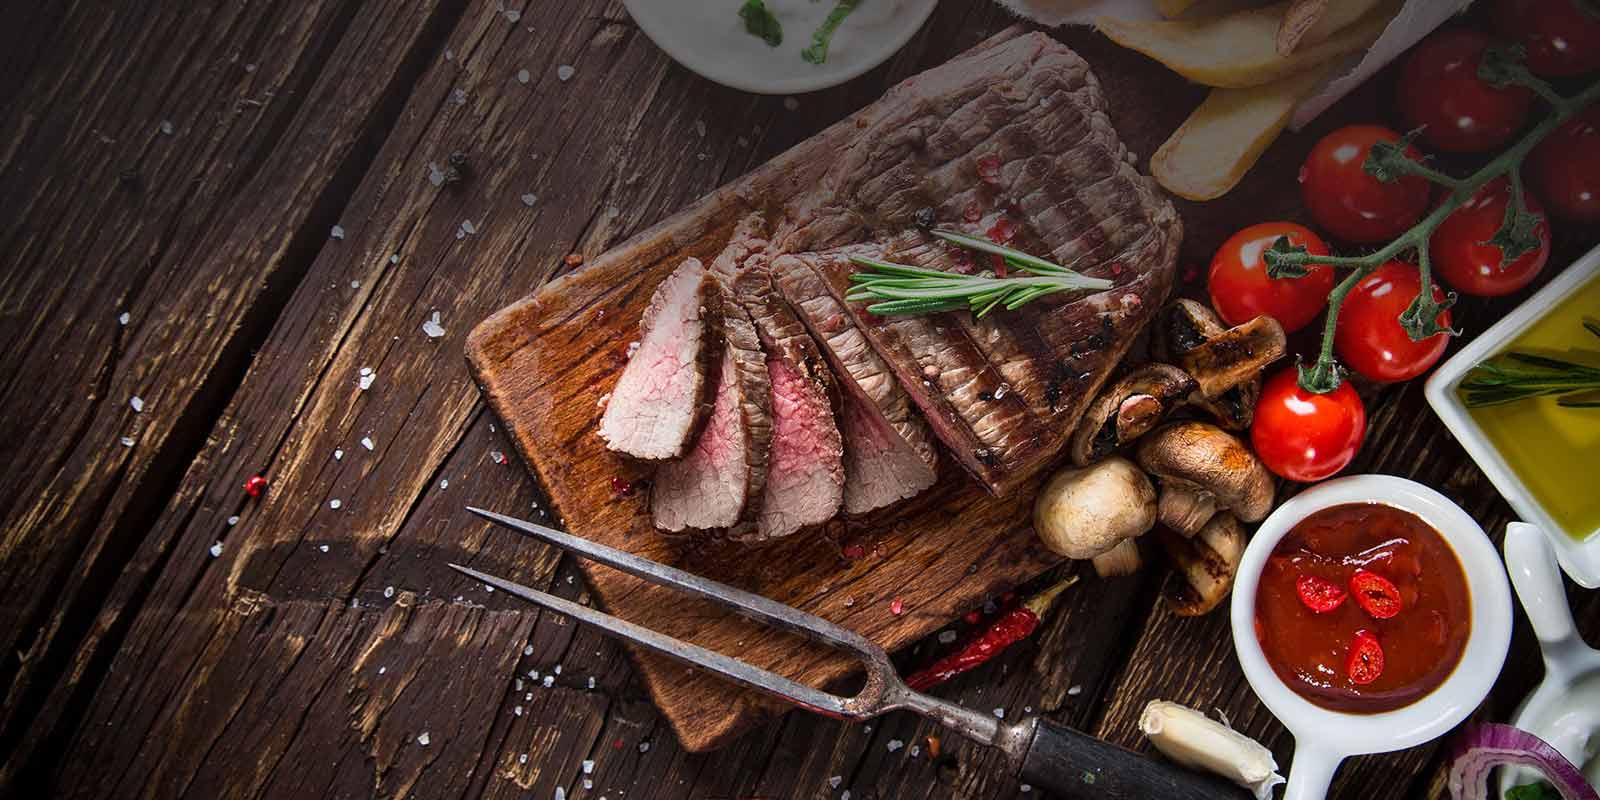 Greenlea Fleisch aus Neuseeland Greenlea ist stolz darauf, dass Sie bestes Rindfleisch produzieren, welches zu 100% mit Gras gefüttert ist.